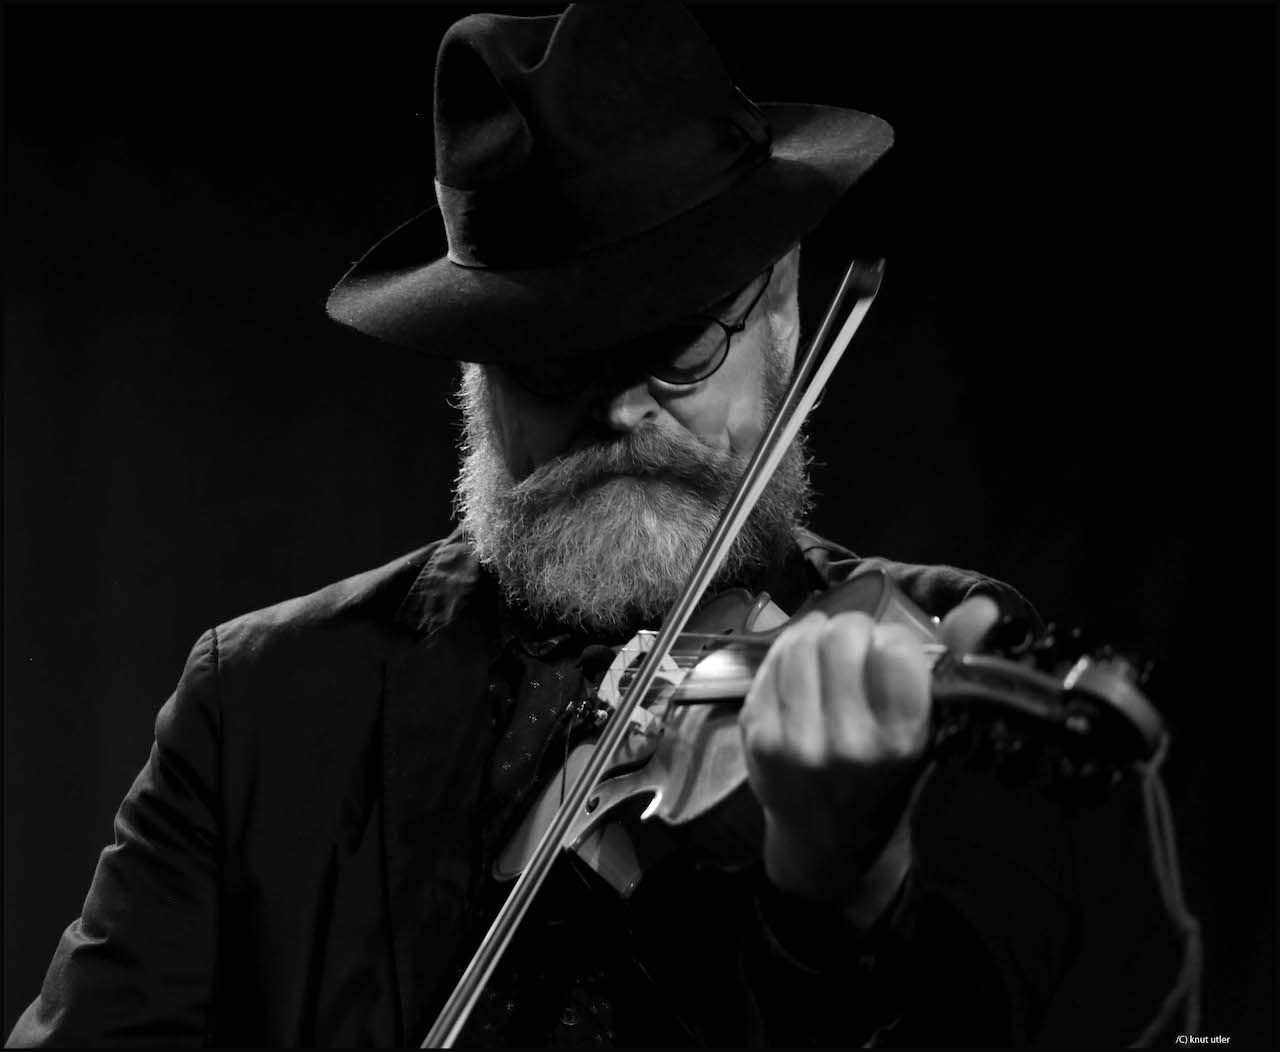 sorthvitt bilde av en mann med hatt og skjegg som spiller instrument foran sort bakgrunn